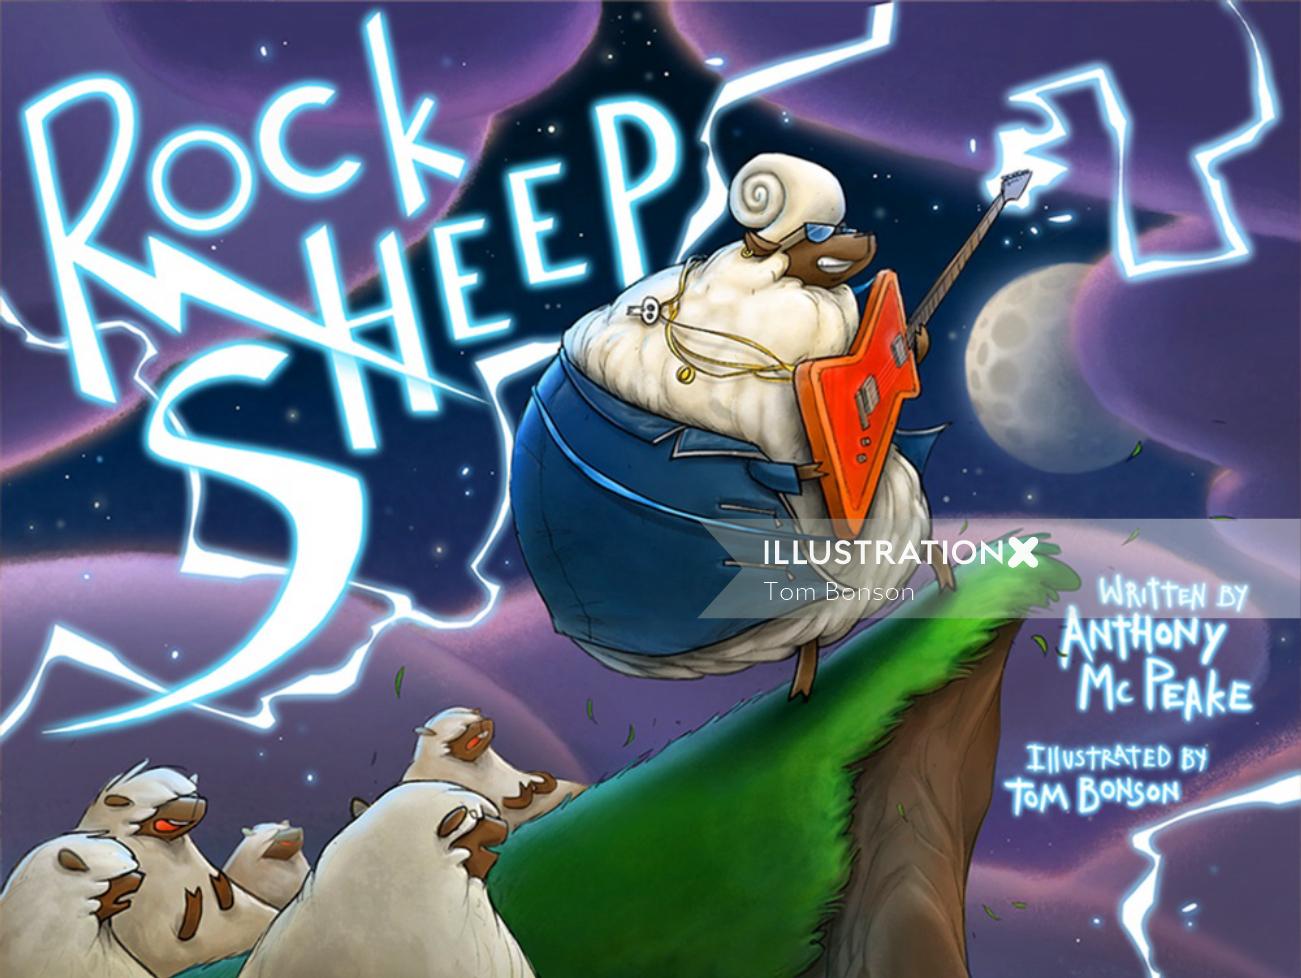 Art de couverture de livre de moutons de roche